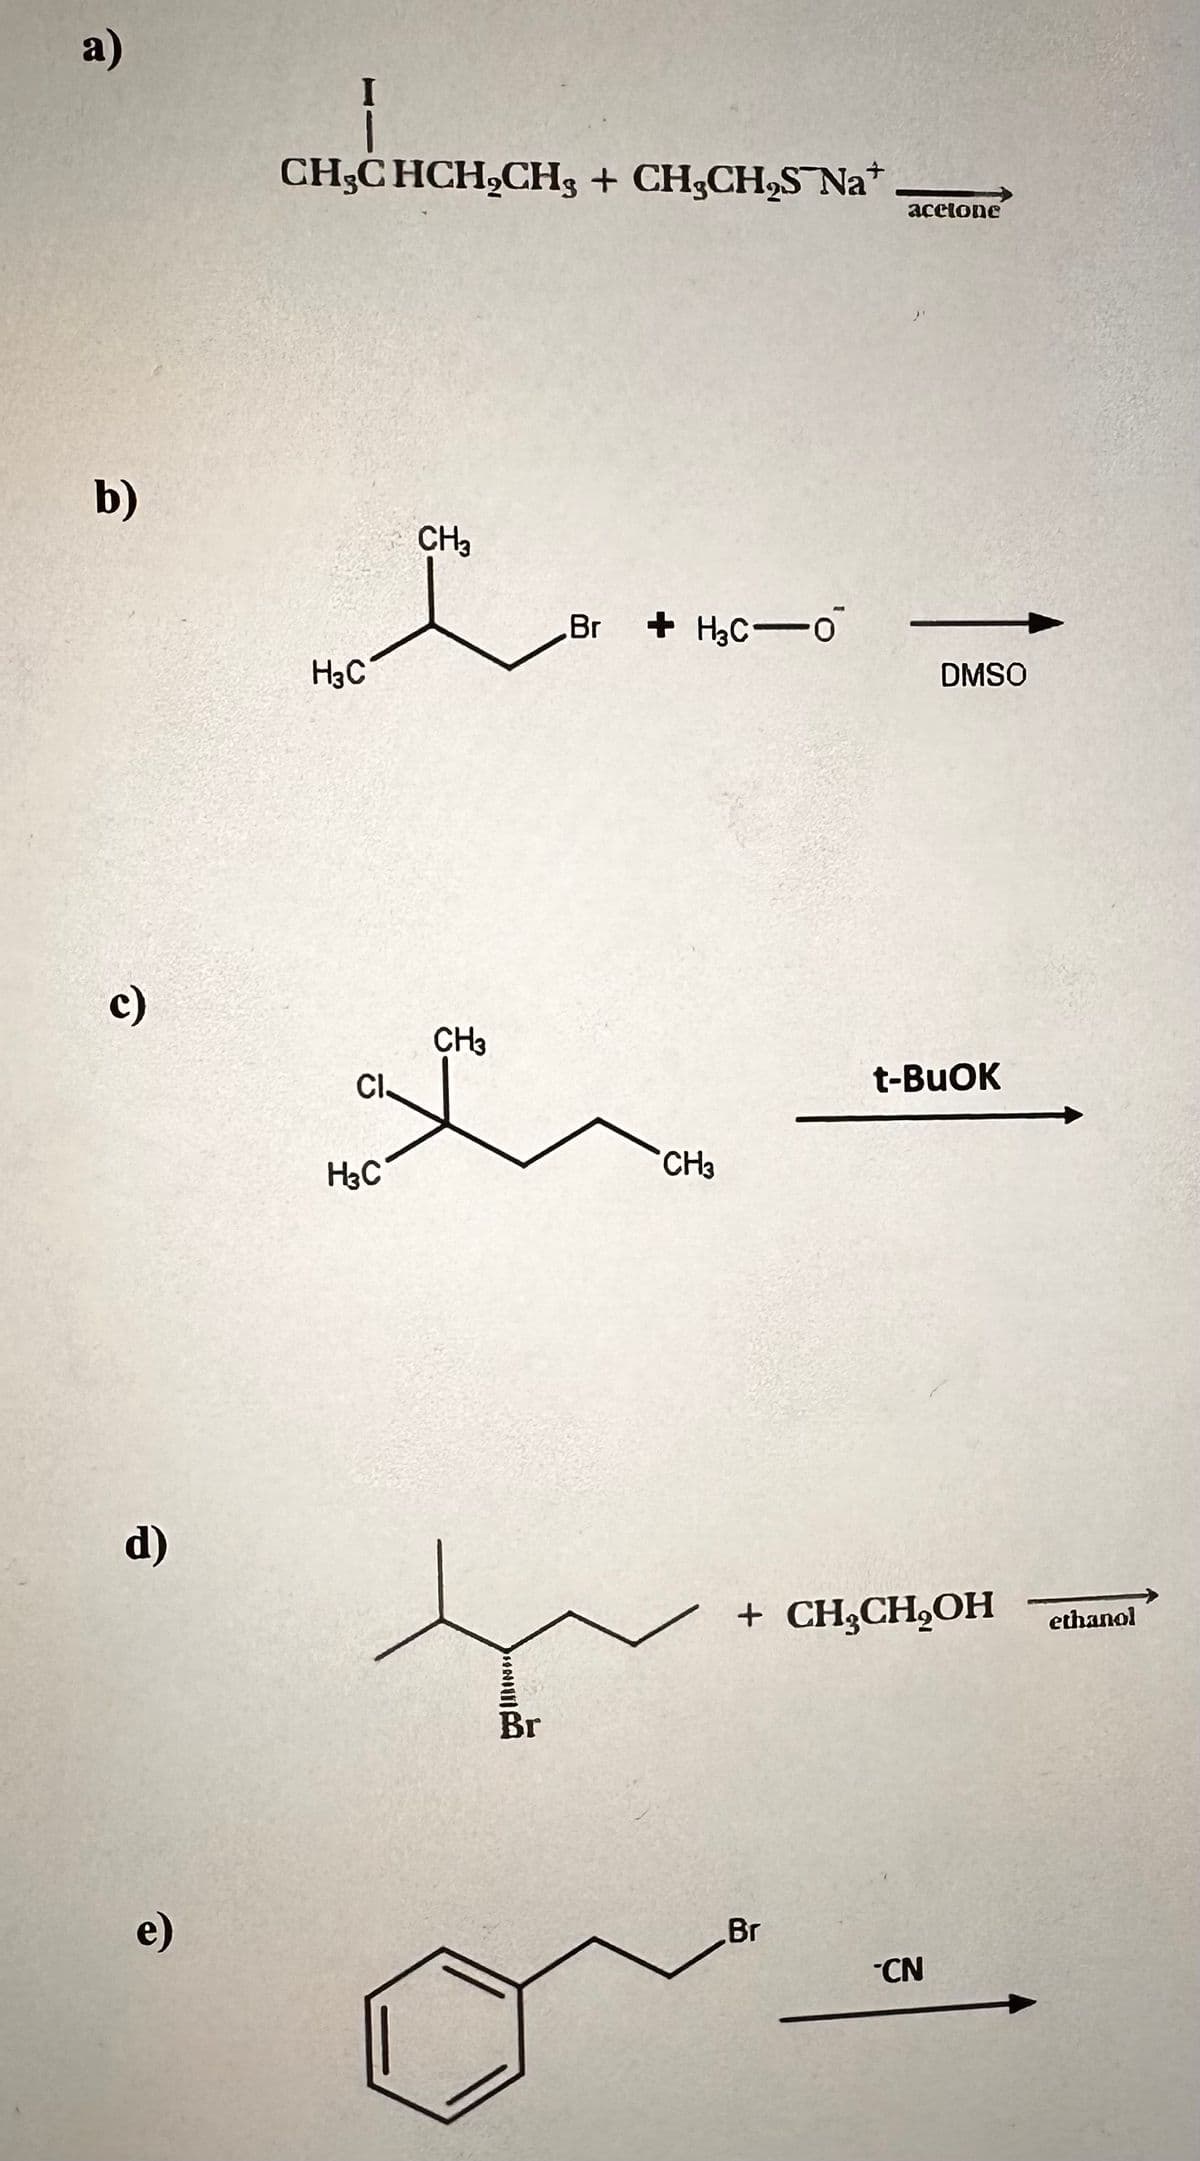 a)
b)
c)
d)
e)
CH₂CHCH₂CH3 + CH3CH₂S Na*
مل
H3C
CH3
H3C
CH3
CI.
L
INILICA
.Br +H3C-0
Br
CH3
accione
Br
DMSO
t-BuOK
+ CH₂CH₂OH ethanol
CN